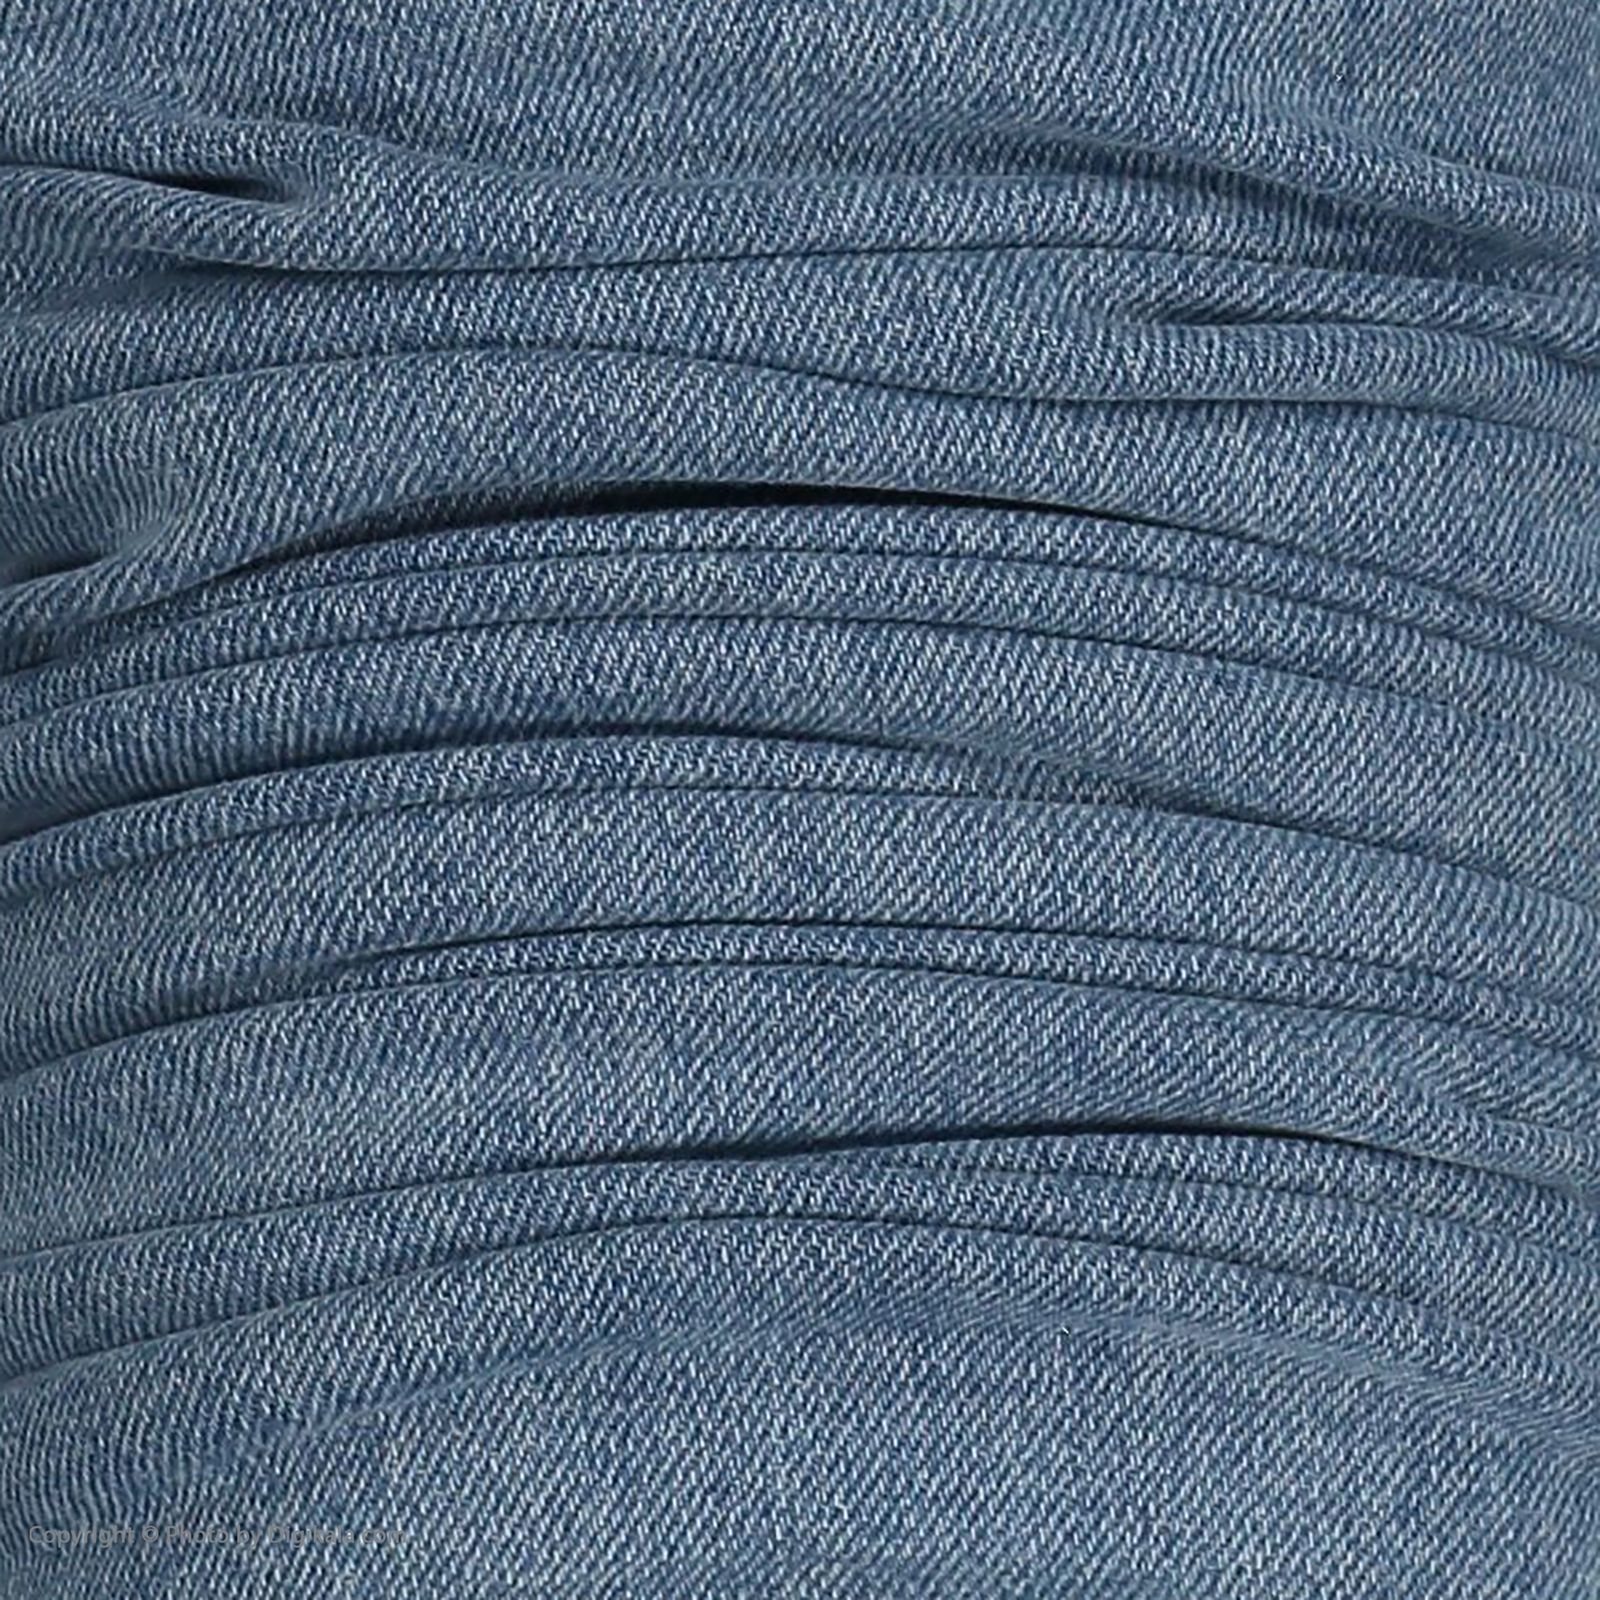 شلوار جین مردانه جامه پوش آرا مدل 4121000203-50 -  - 6